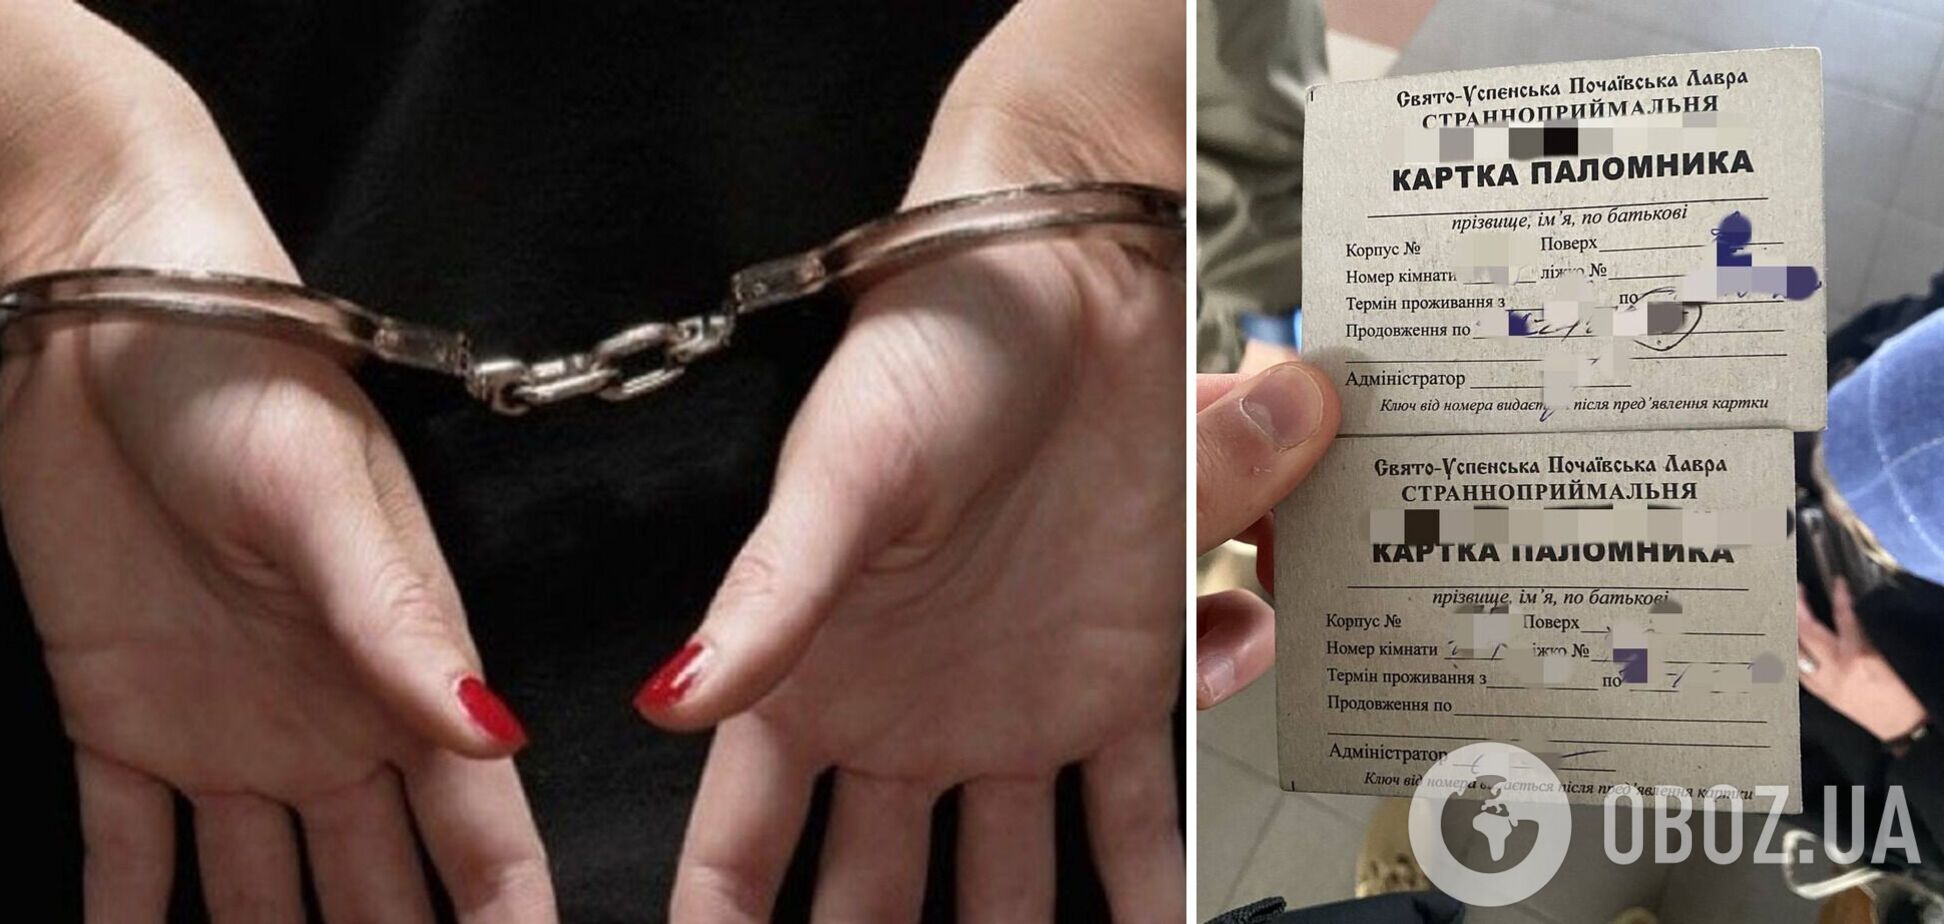 Прикордонники затримали росіянку-'паломницю': в телефоні знайшли антиукраїнське листування. Фото